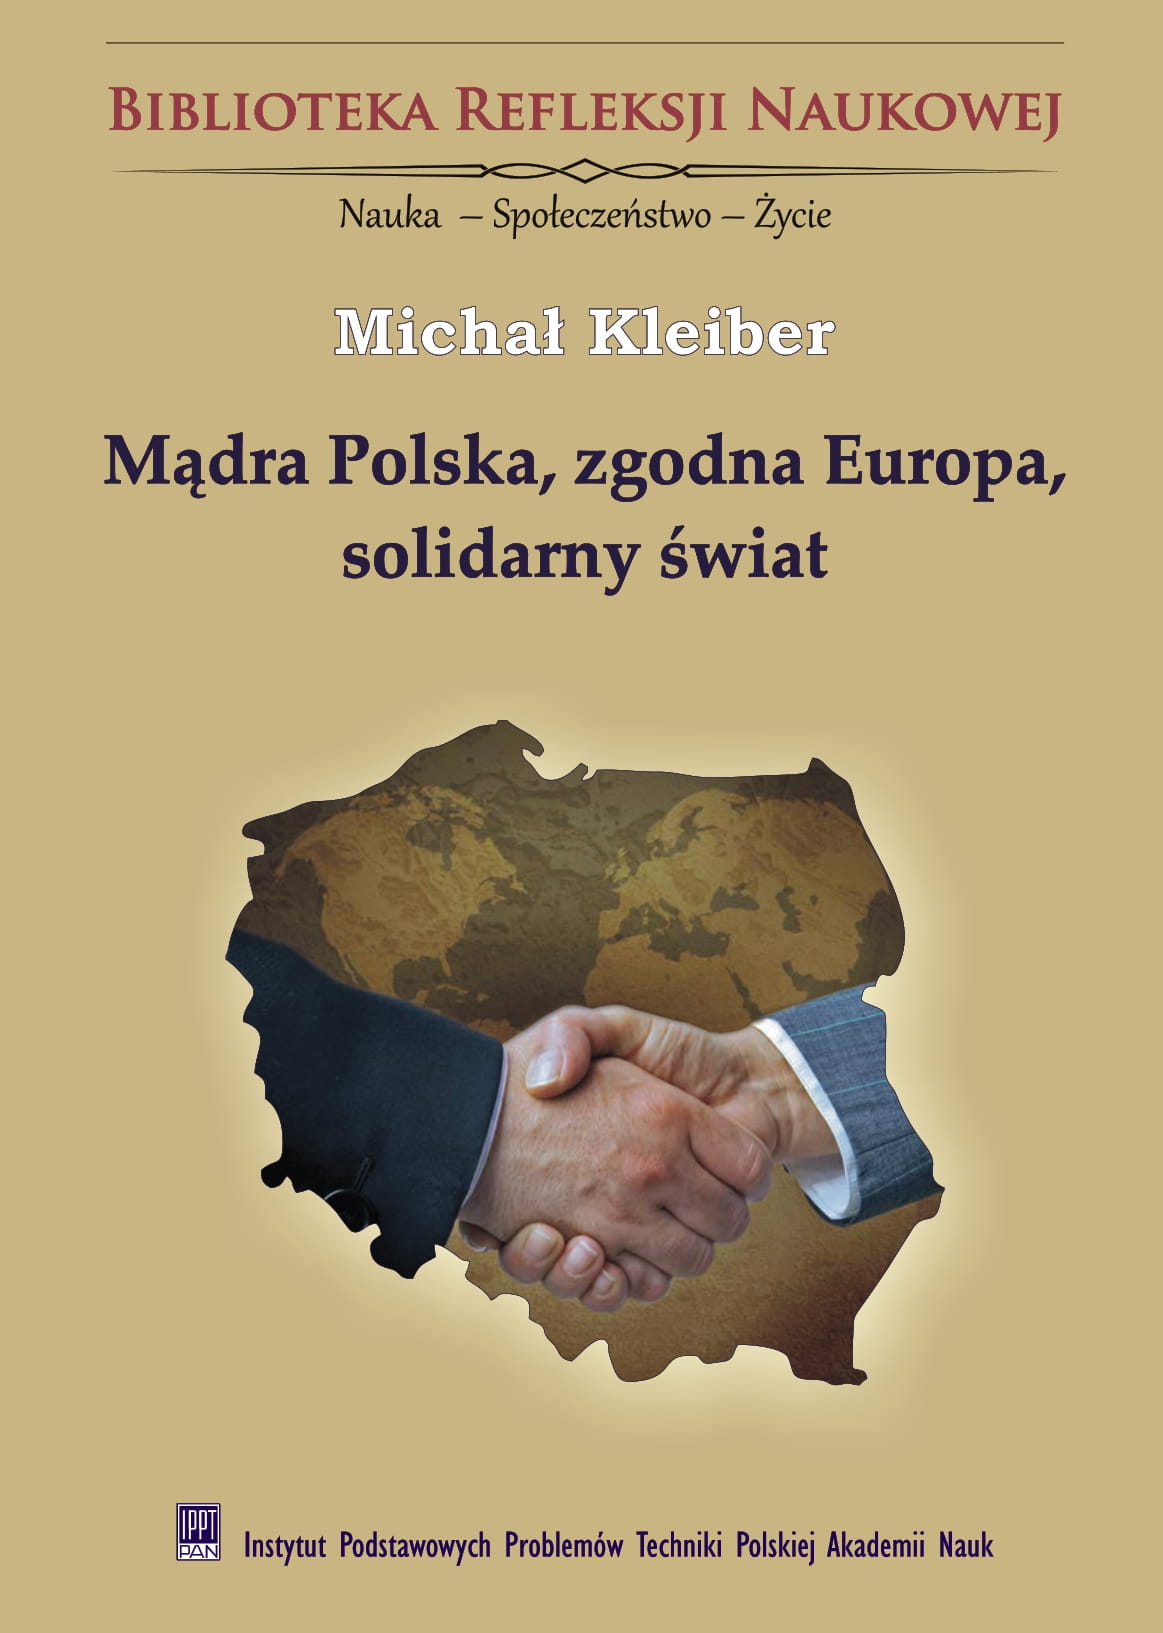 Mądra Polska, zgodna Europa, solidarny świat<br />
Stale poszerzana wiedza i innowacje na rzecz dobra wspólnego podstawami stabilnej przyszłości